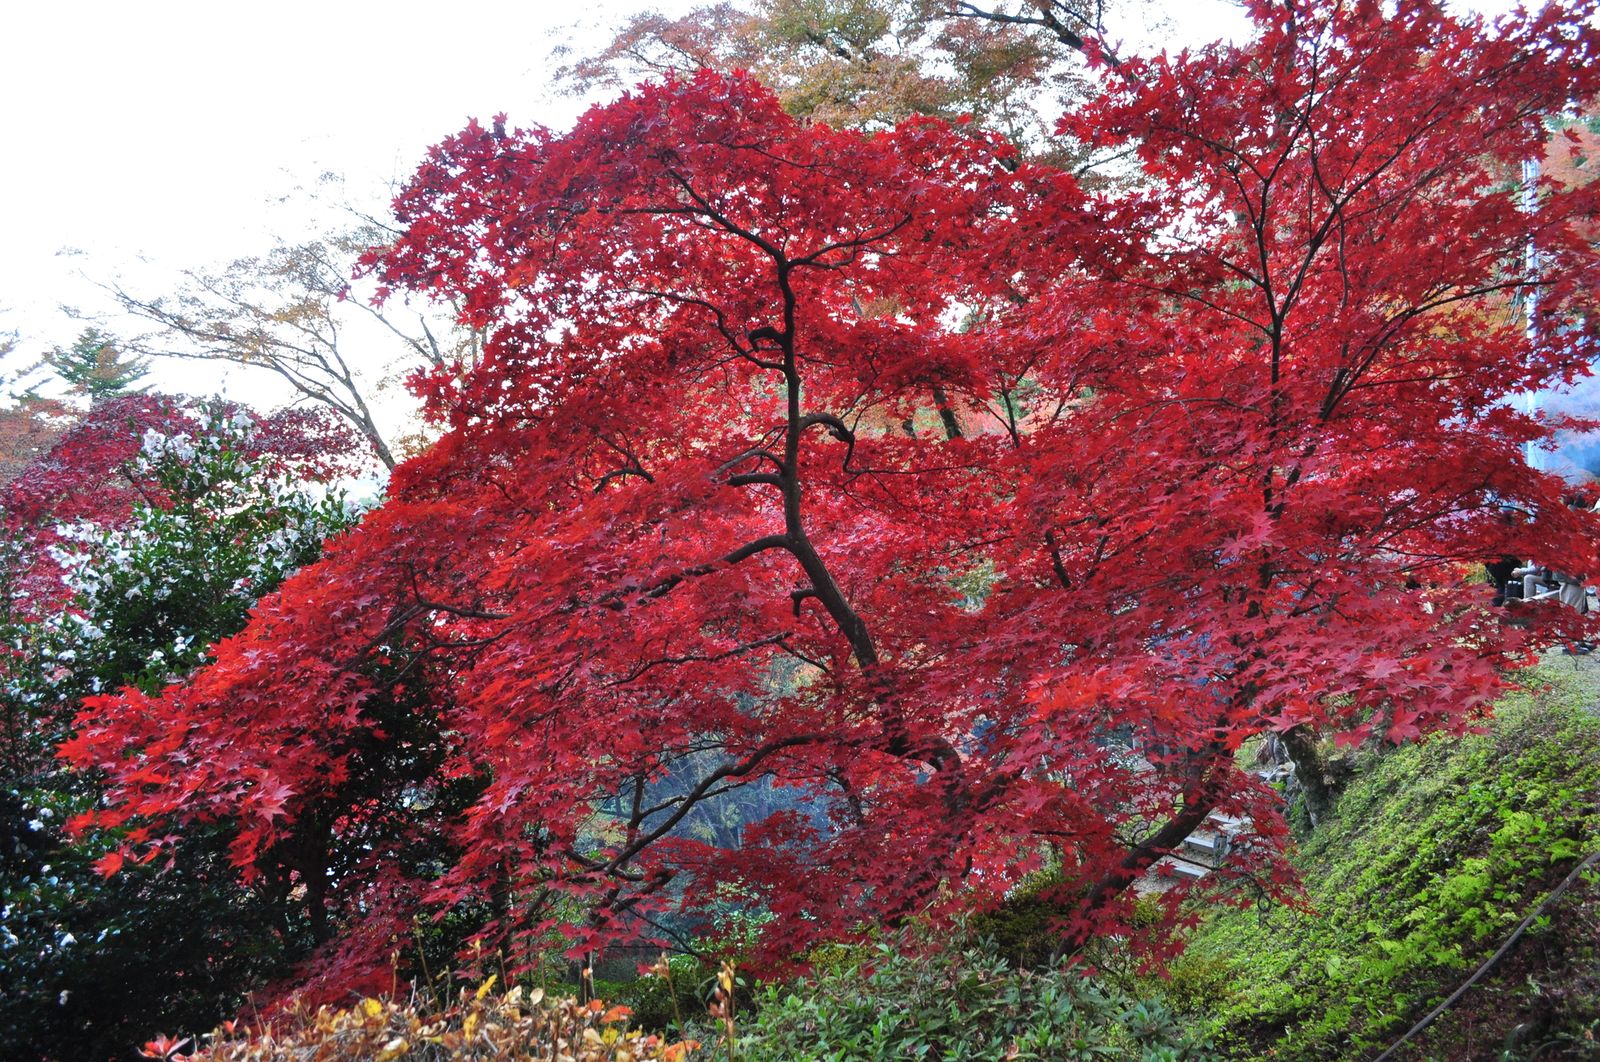 埼玉の穴場紅葉スポット 真っ赤に染まる秋の絶景 東郷公園 が美しすぎる Retrip リトリップ